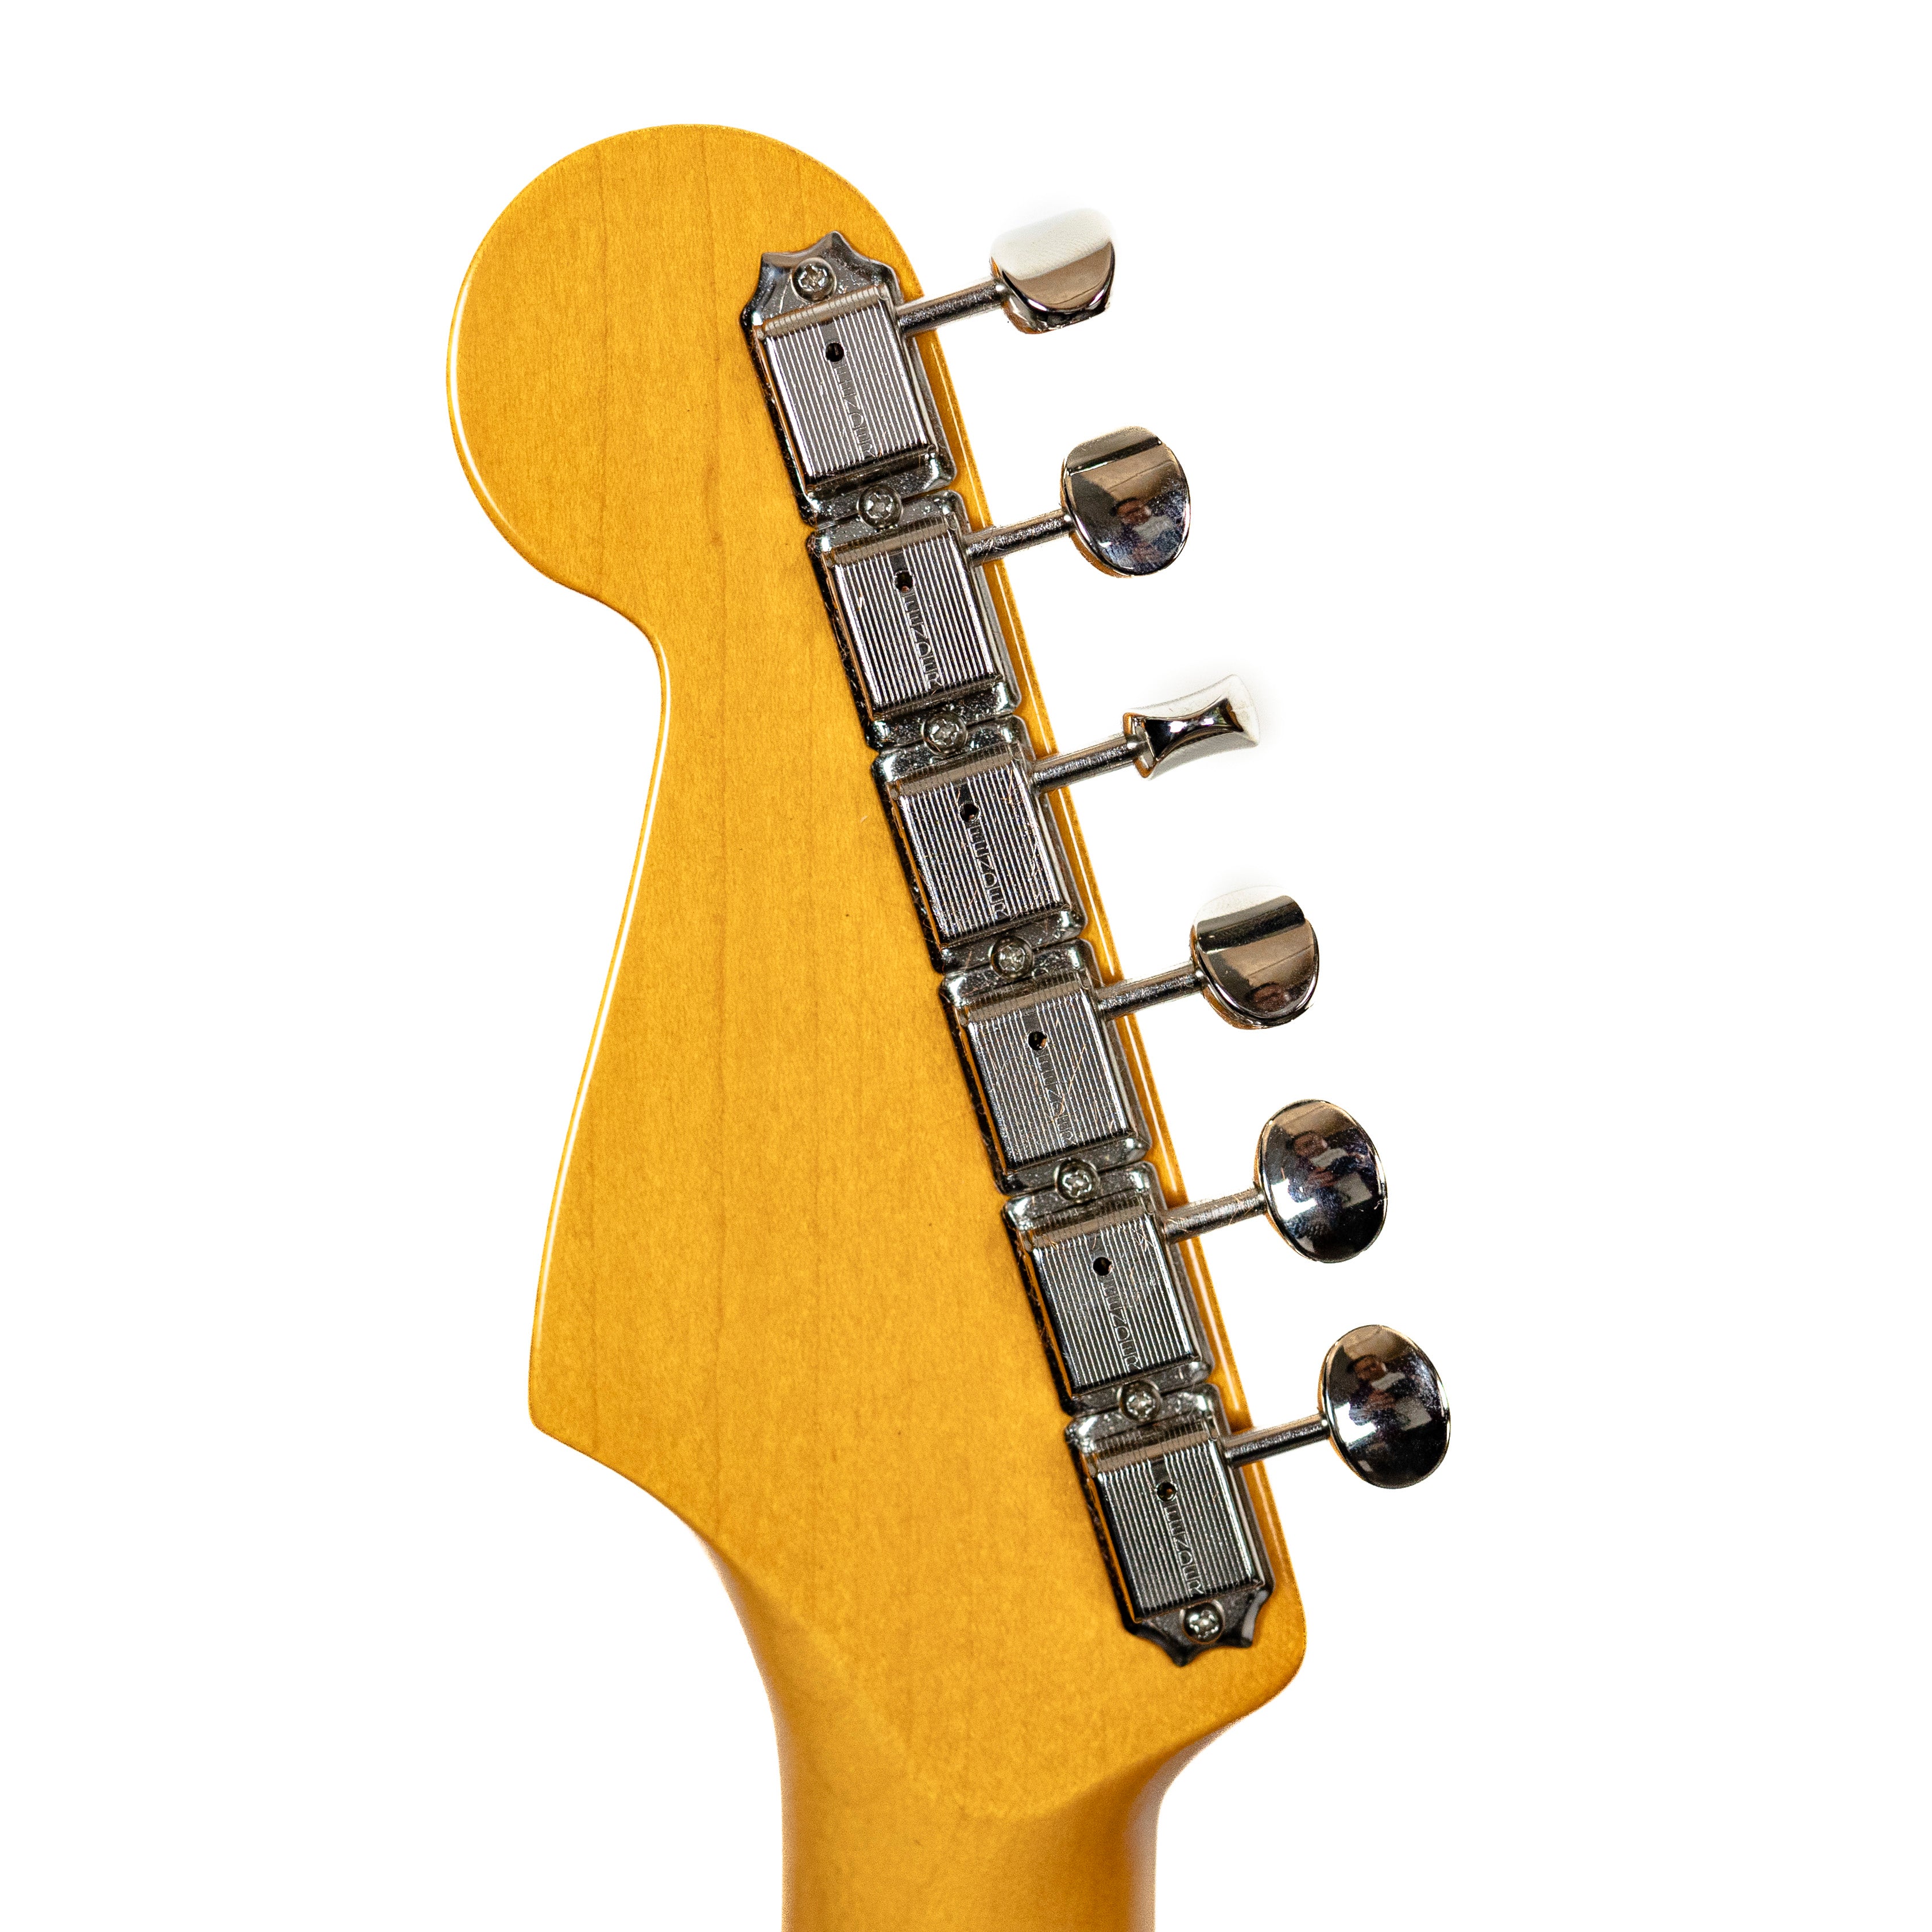 Fender American Vintage II '61 Strat 3 Tone Sunburst